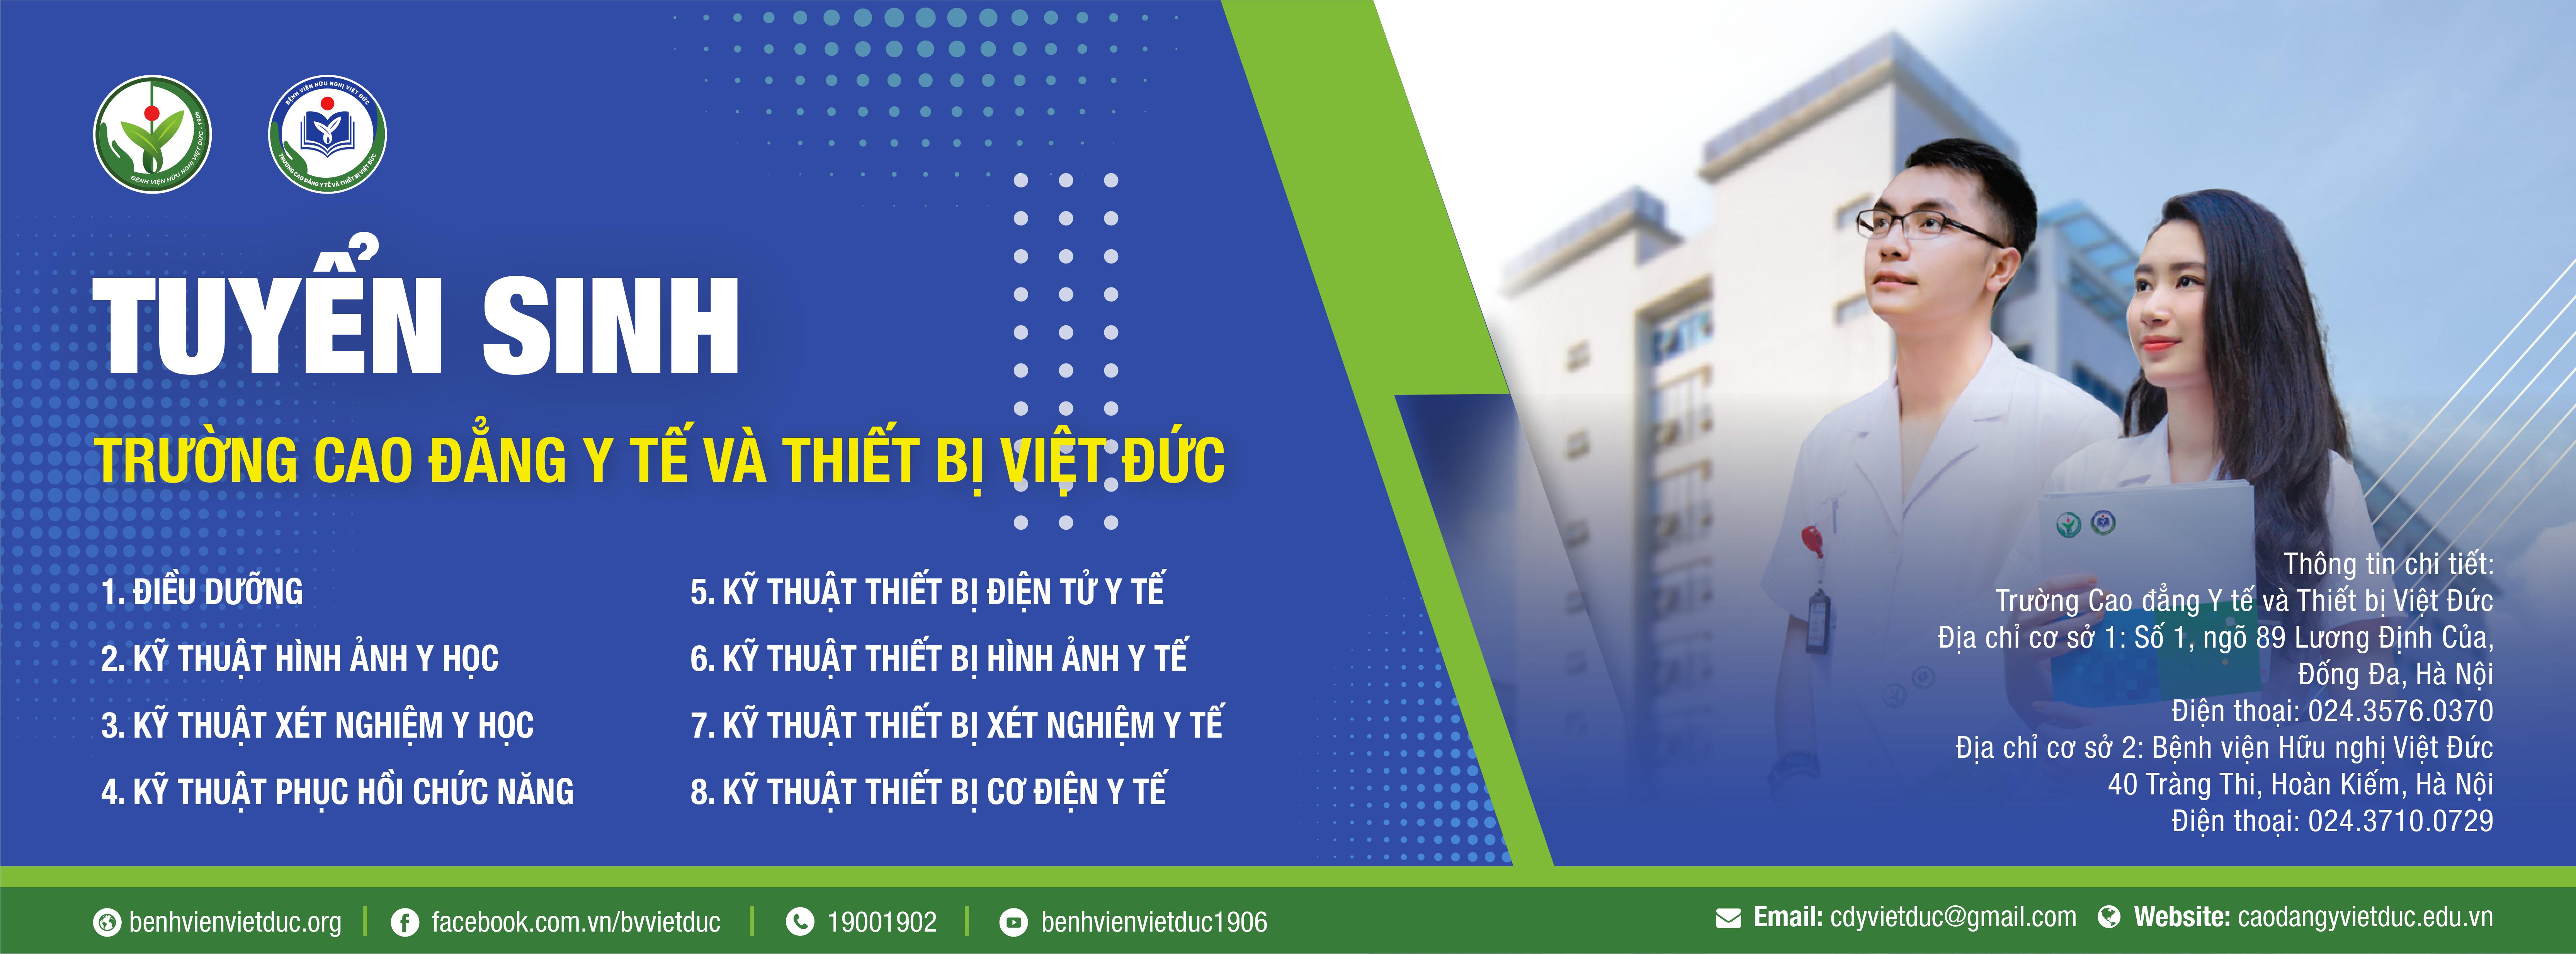 Với chất lượng dịch vụ đạt tiêu chuẩn quốc tế, Bệnh viện Việt Đức chắc chắn sẽ là nơi bạn có thể yên tâm tìm kiếm cứu chữa cho sức khỏe của mình. Hãy xem hình ảnh để hiểu thêm về các dịch vụ chăm sóc sức khỏe tại Bệnh viện Việt Đức nhé!